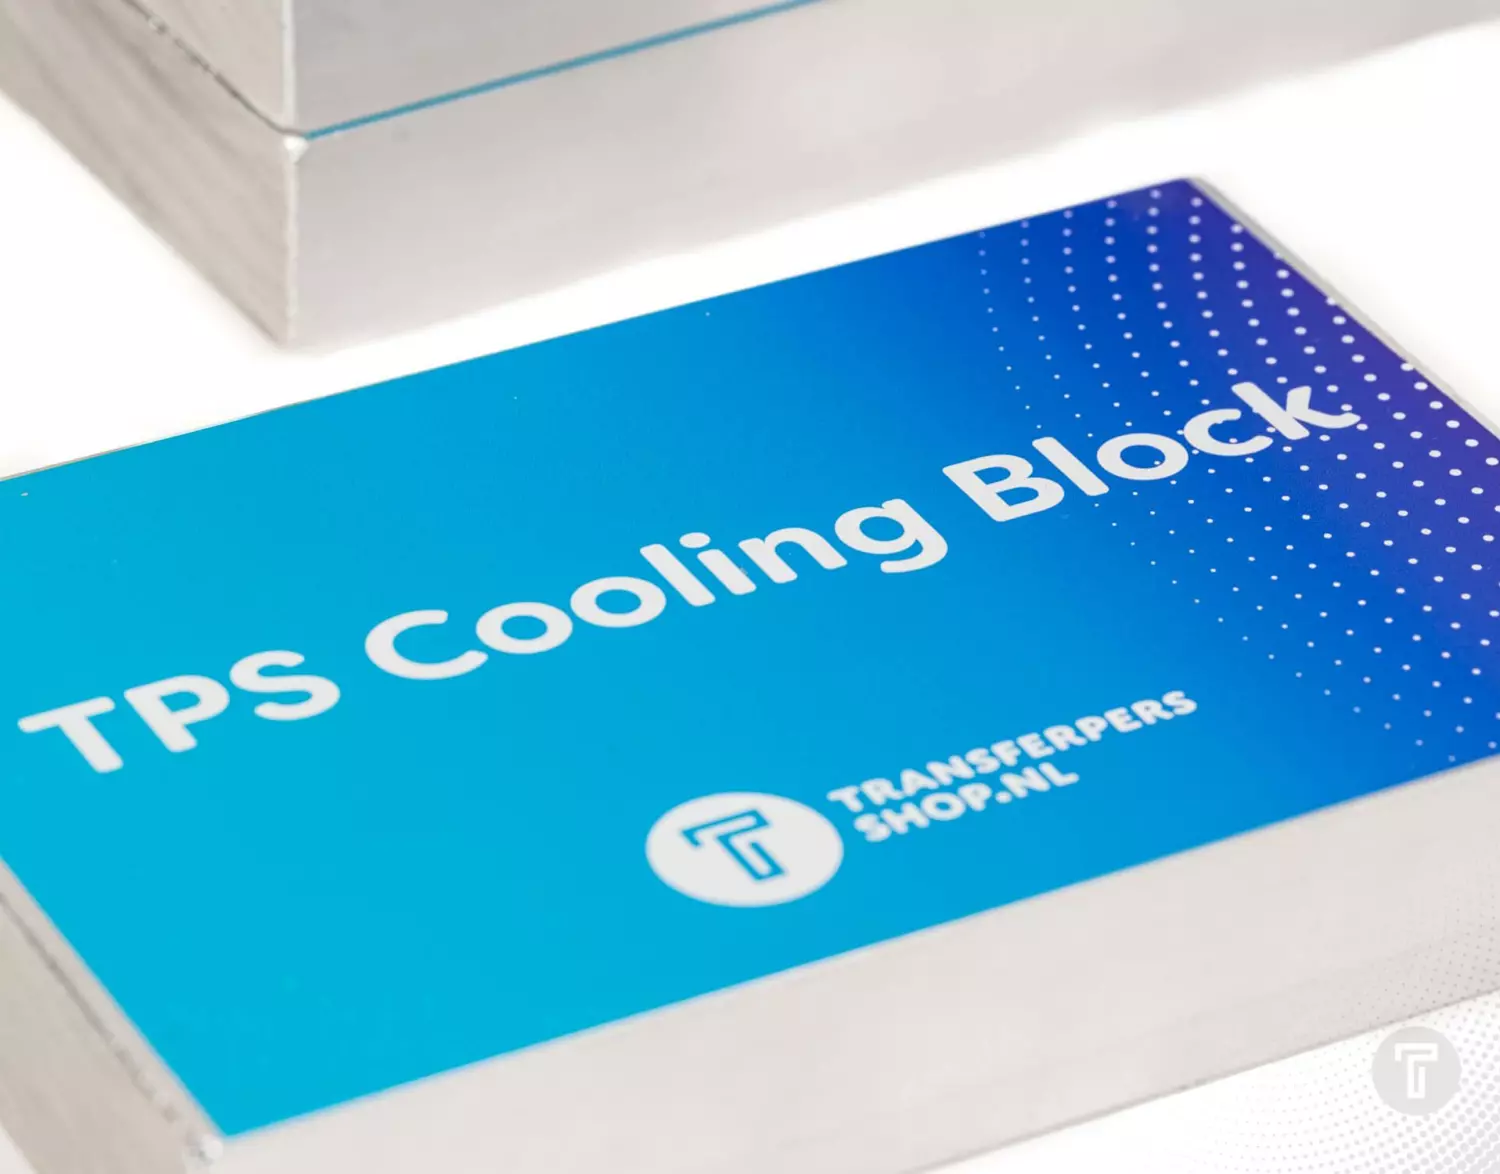 Tps cooling block detail 1